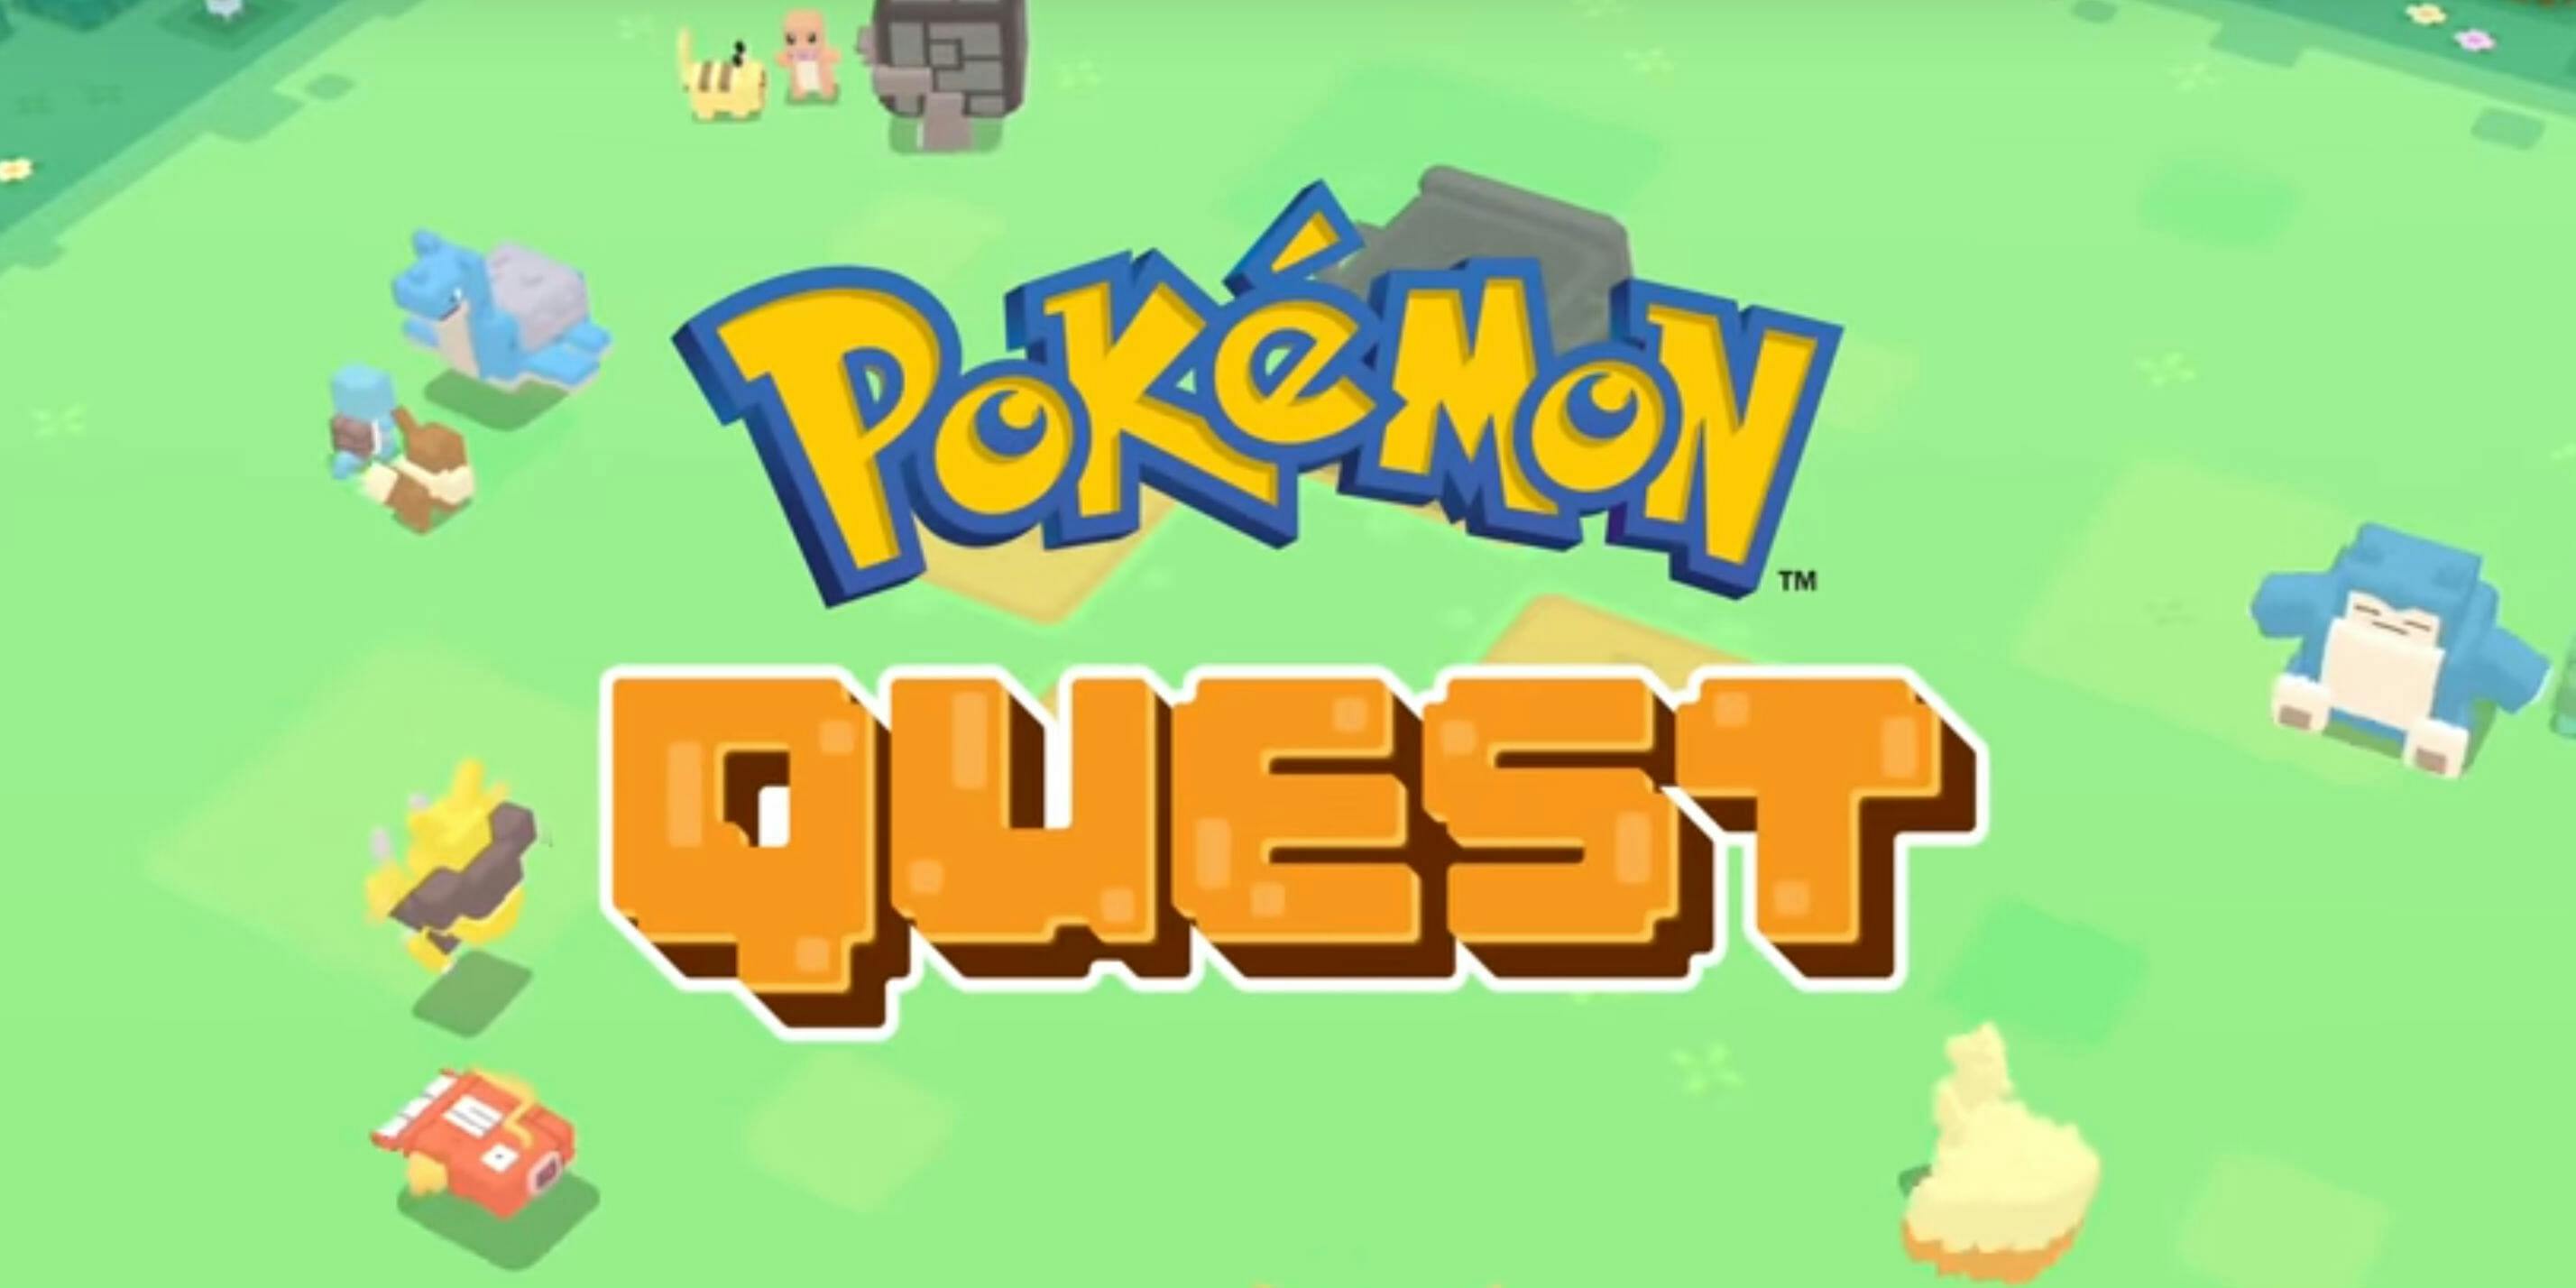 Pokémon Quest Review (Switch eShop)